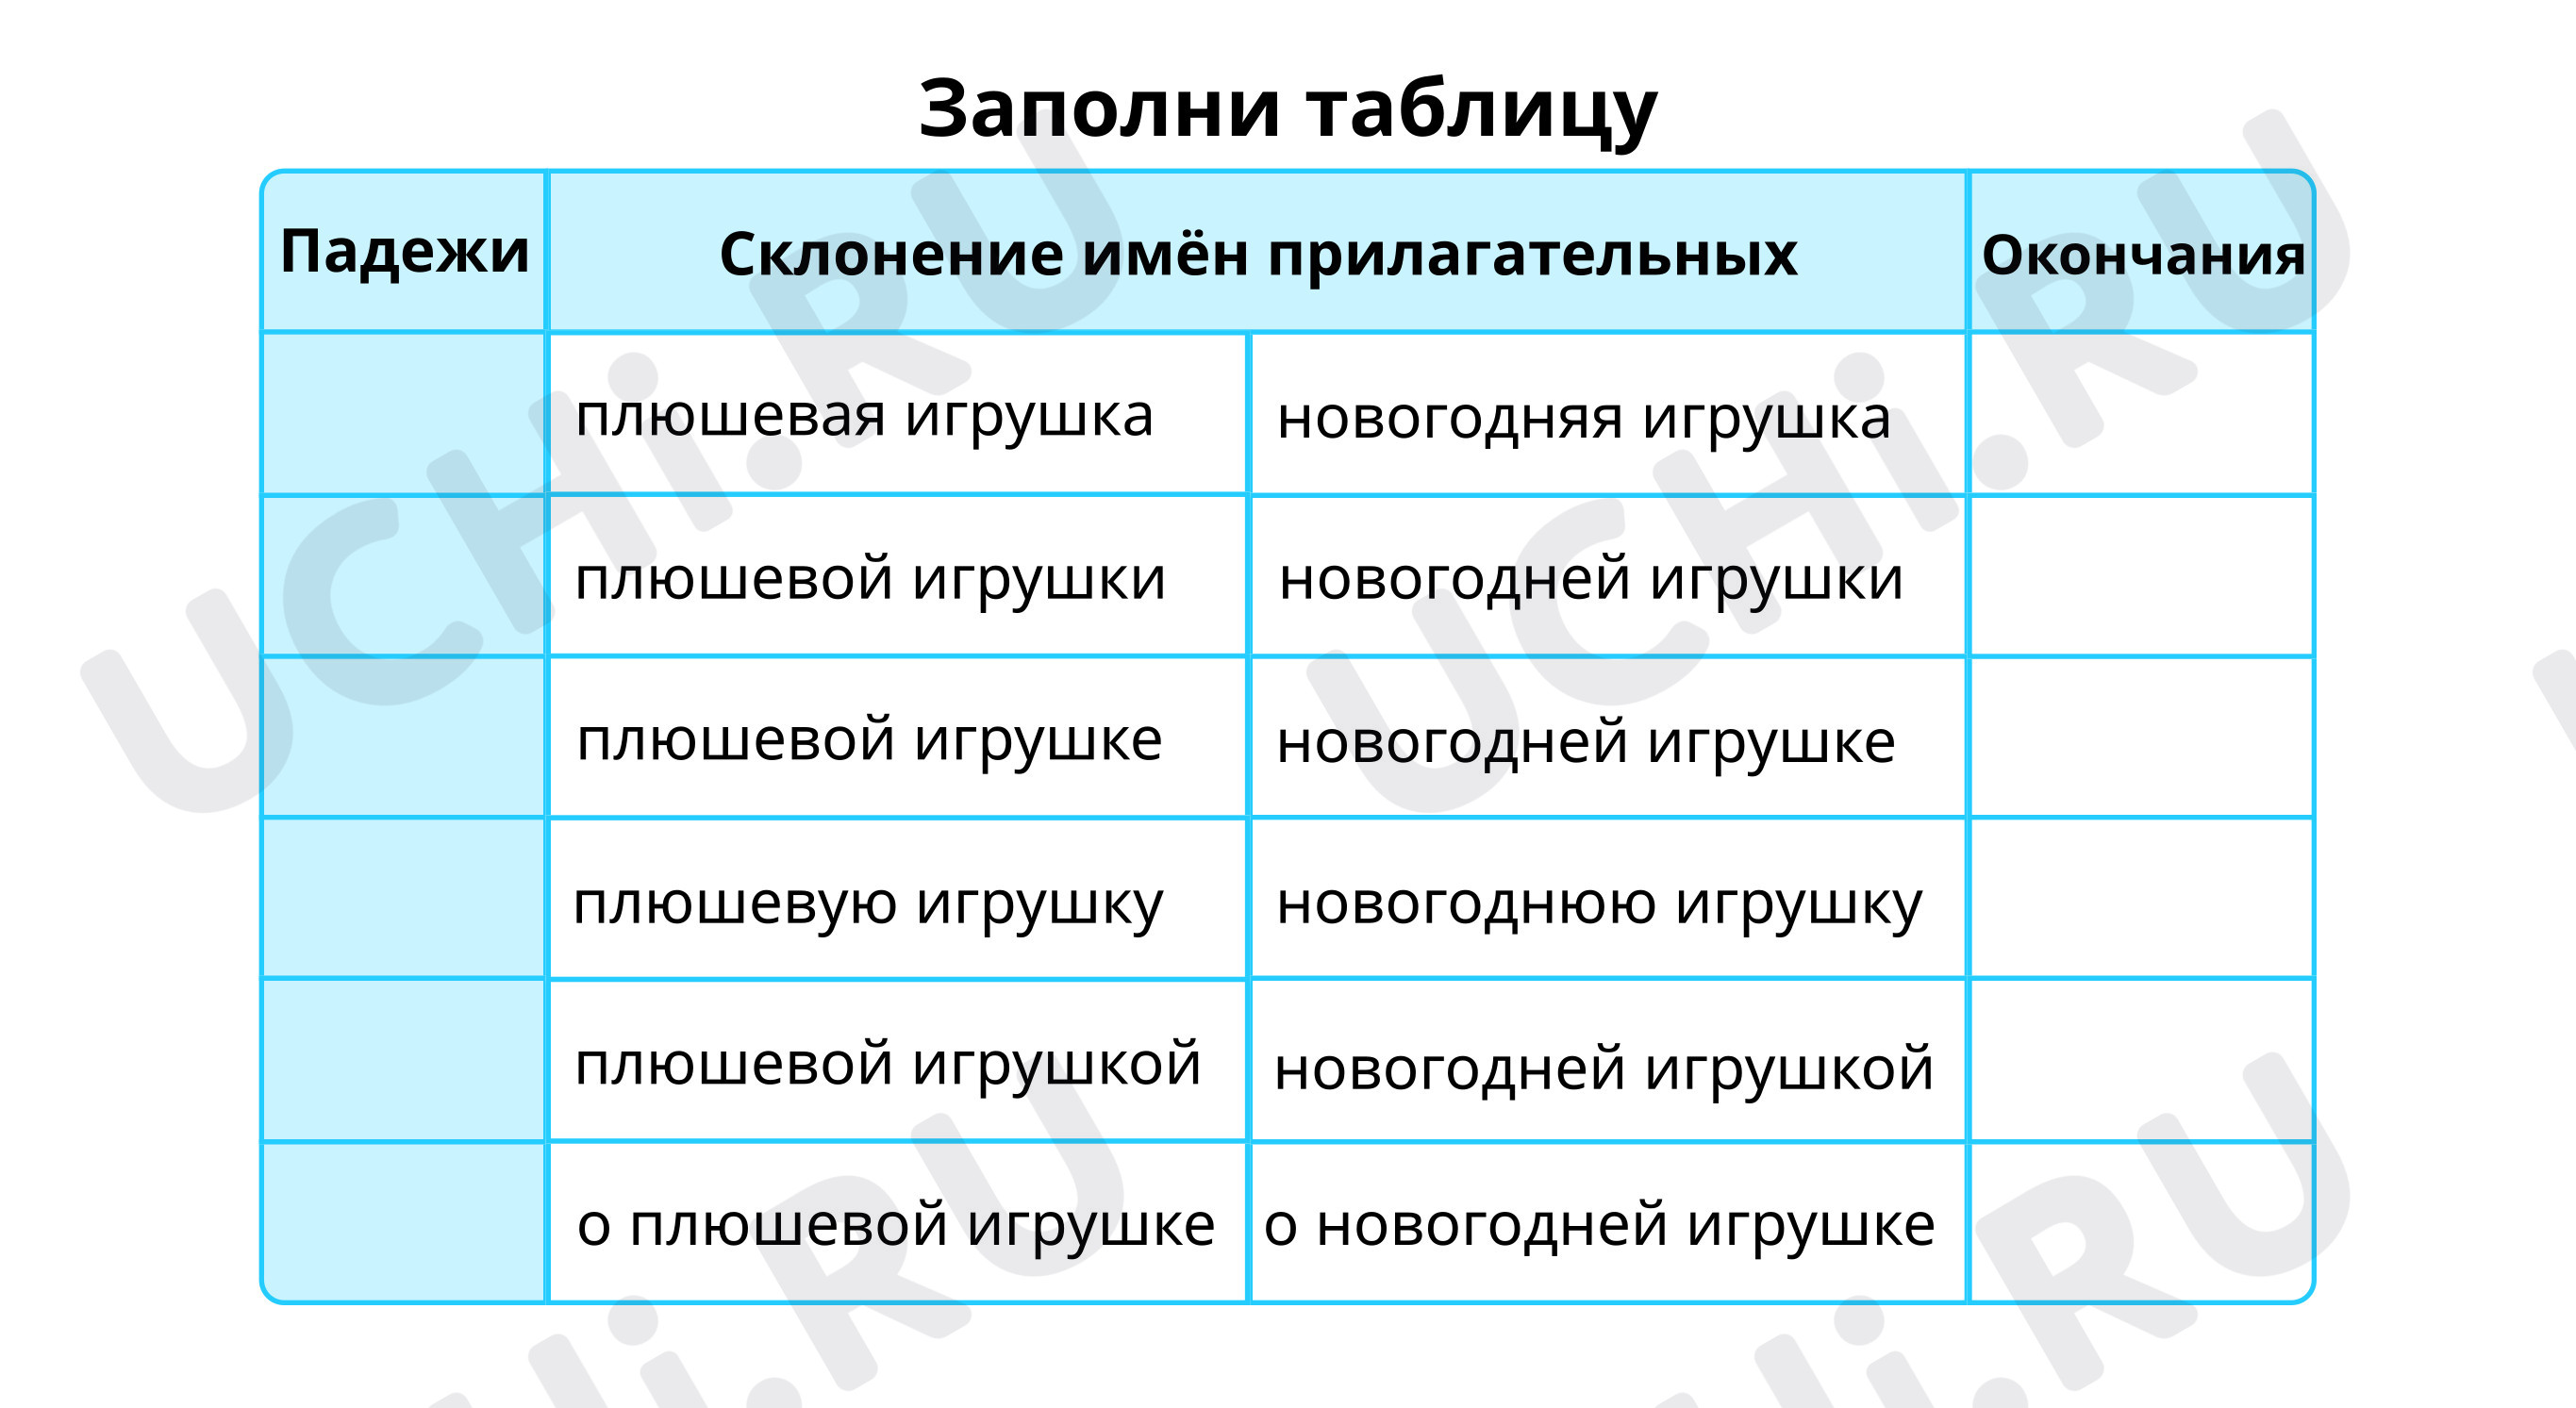 Склонение имен прилагательных в русском языке: типы, правила, таблица с примерами